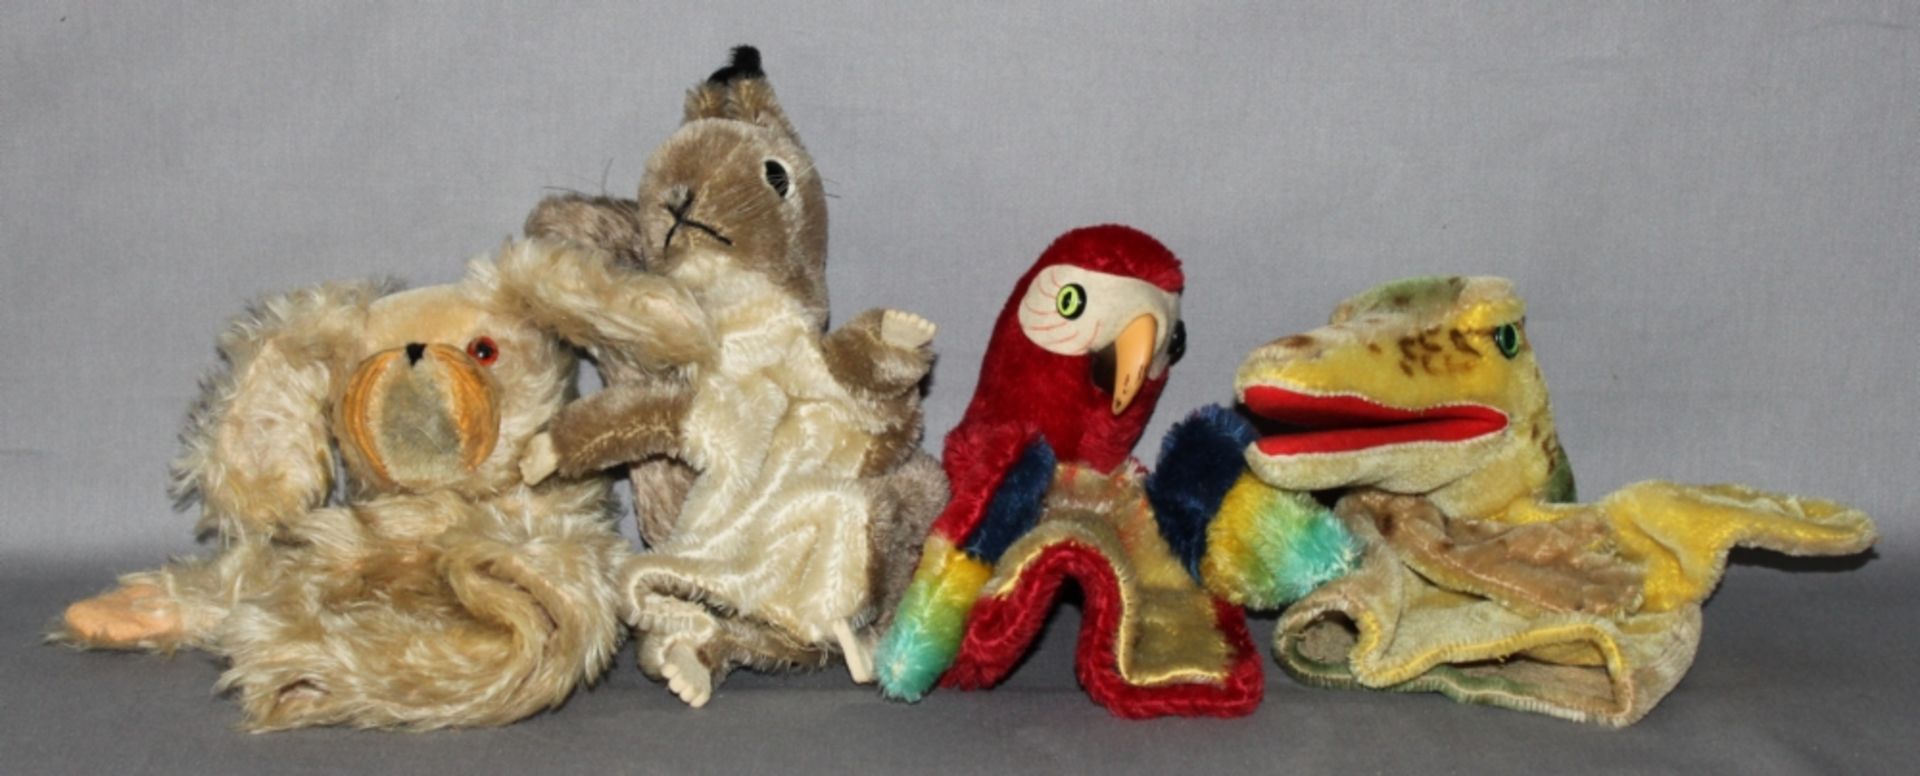 Kinderspielzeug. Steiff. Vier Handpuppen - Papagei, Eichhörnchen, Hund und Krokodil. Eine